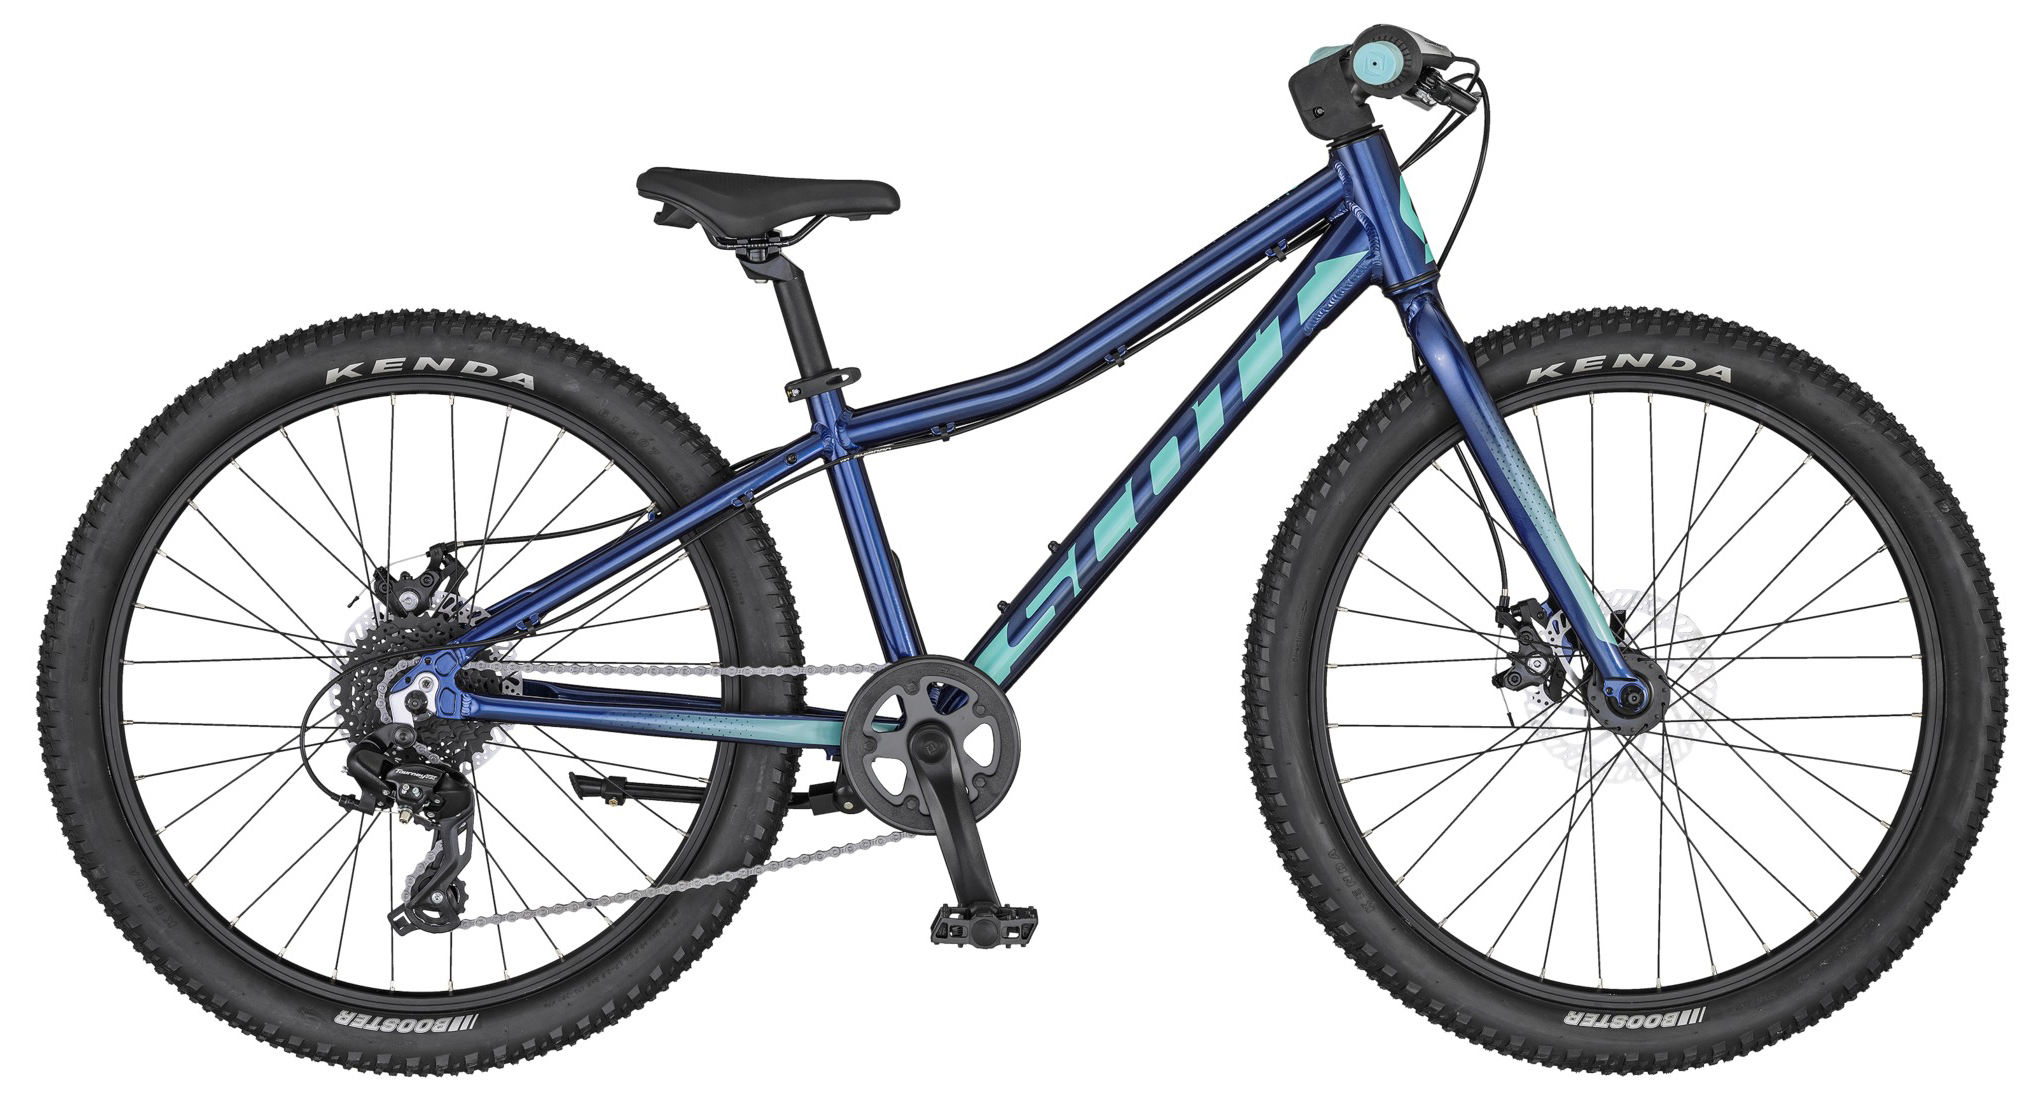  Отзывы о Подростковом велосипеде Scott Contessa 24 rigid 2020